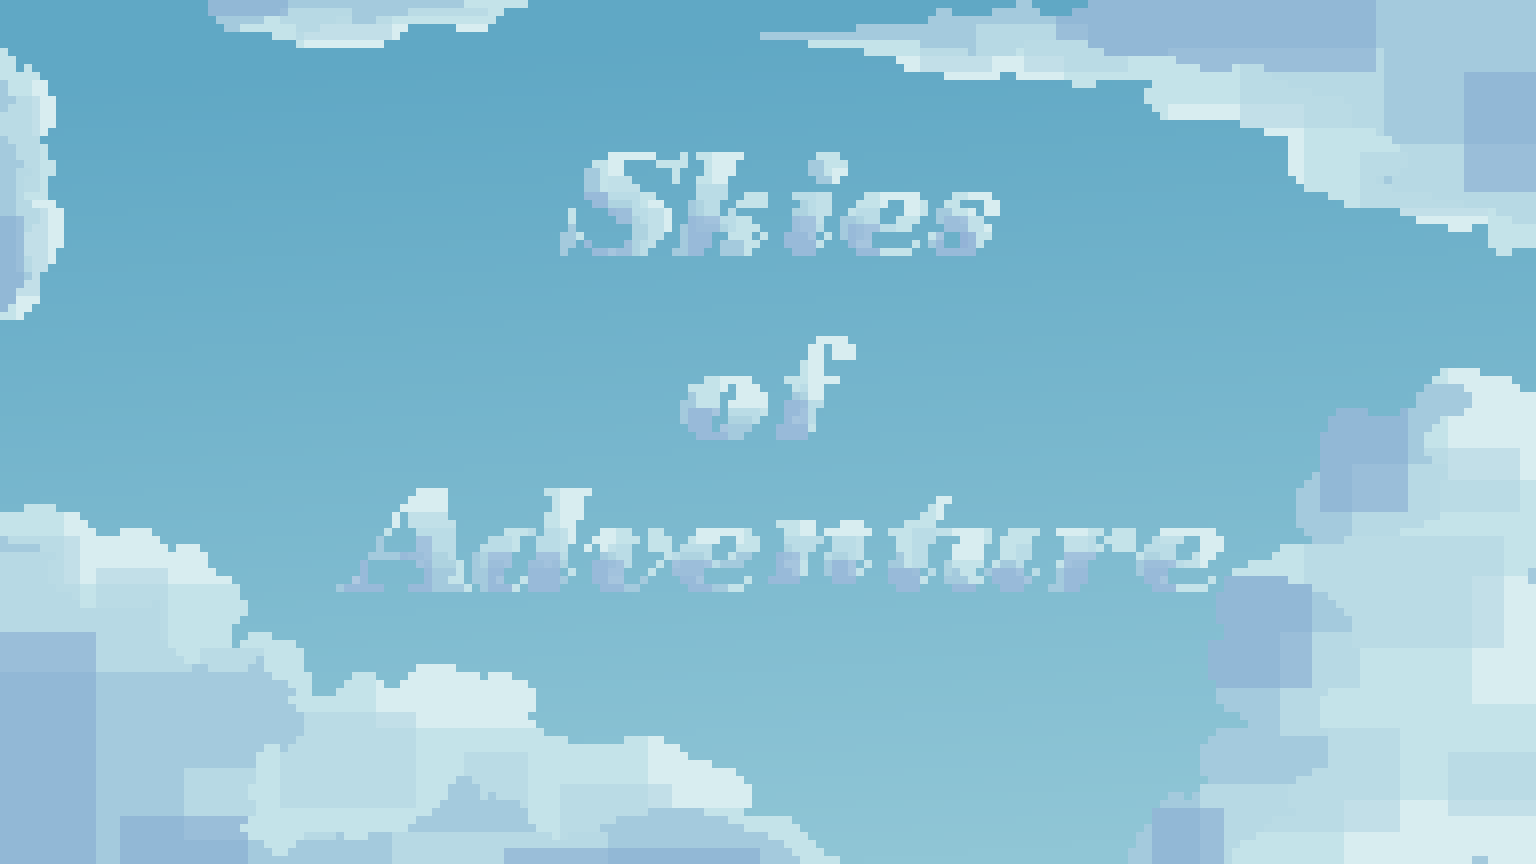 Skies of Adventure